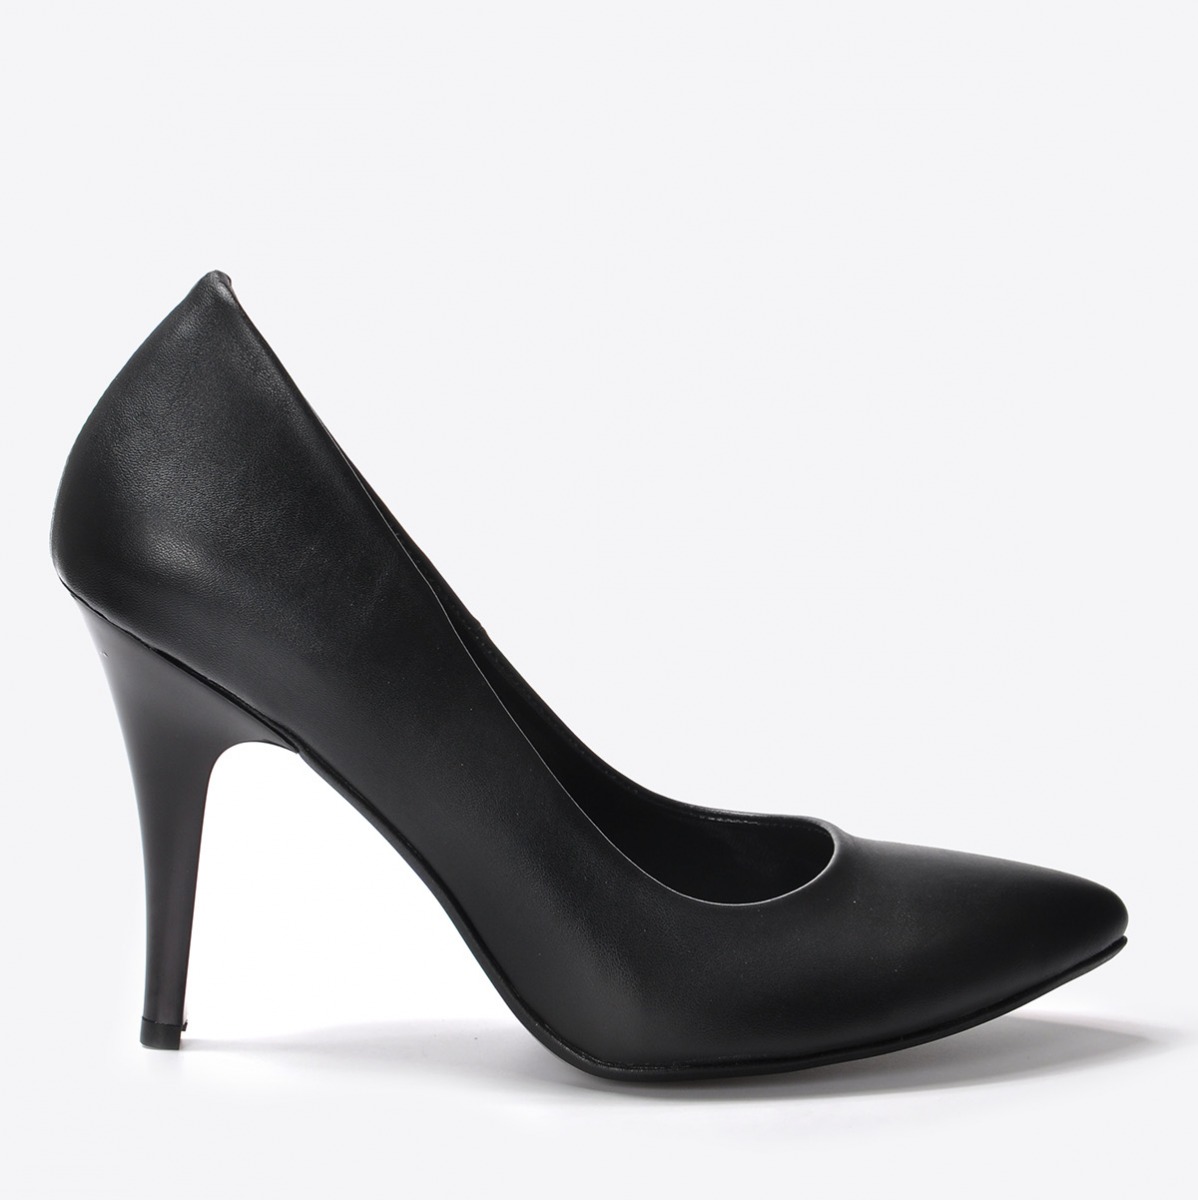 Flo Kadın Siyah Klasik Topuklu Ayakkabı VZN20-170Y. 2